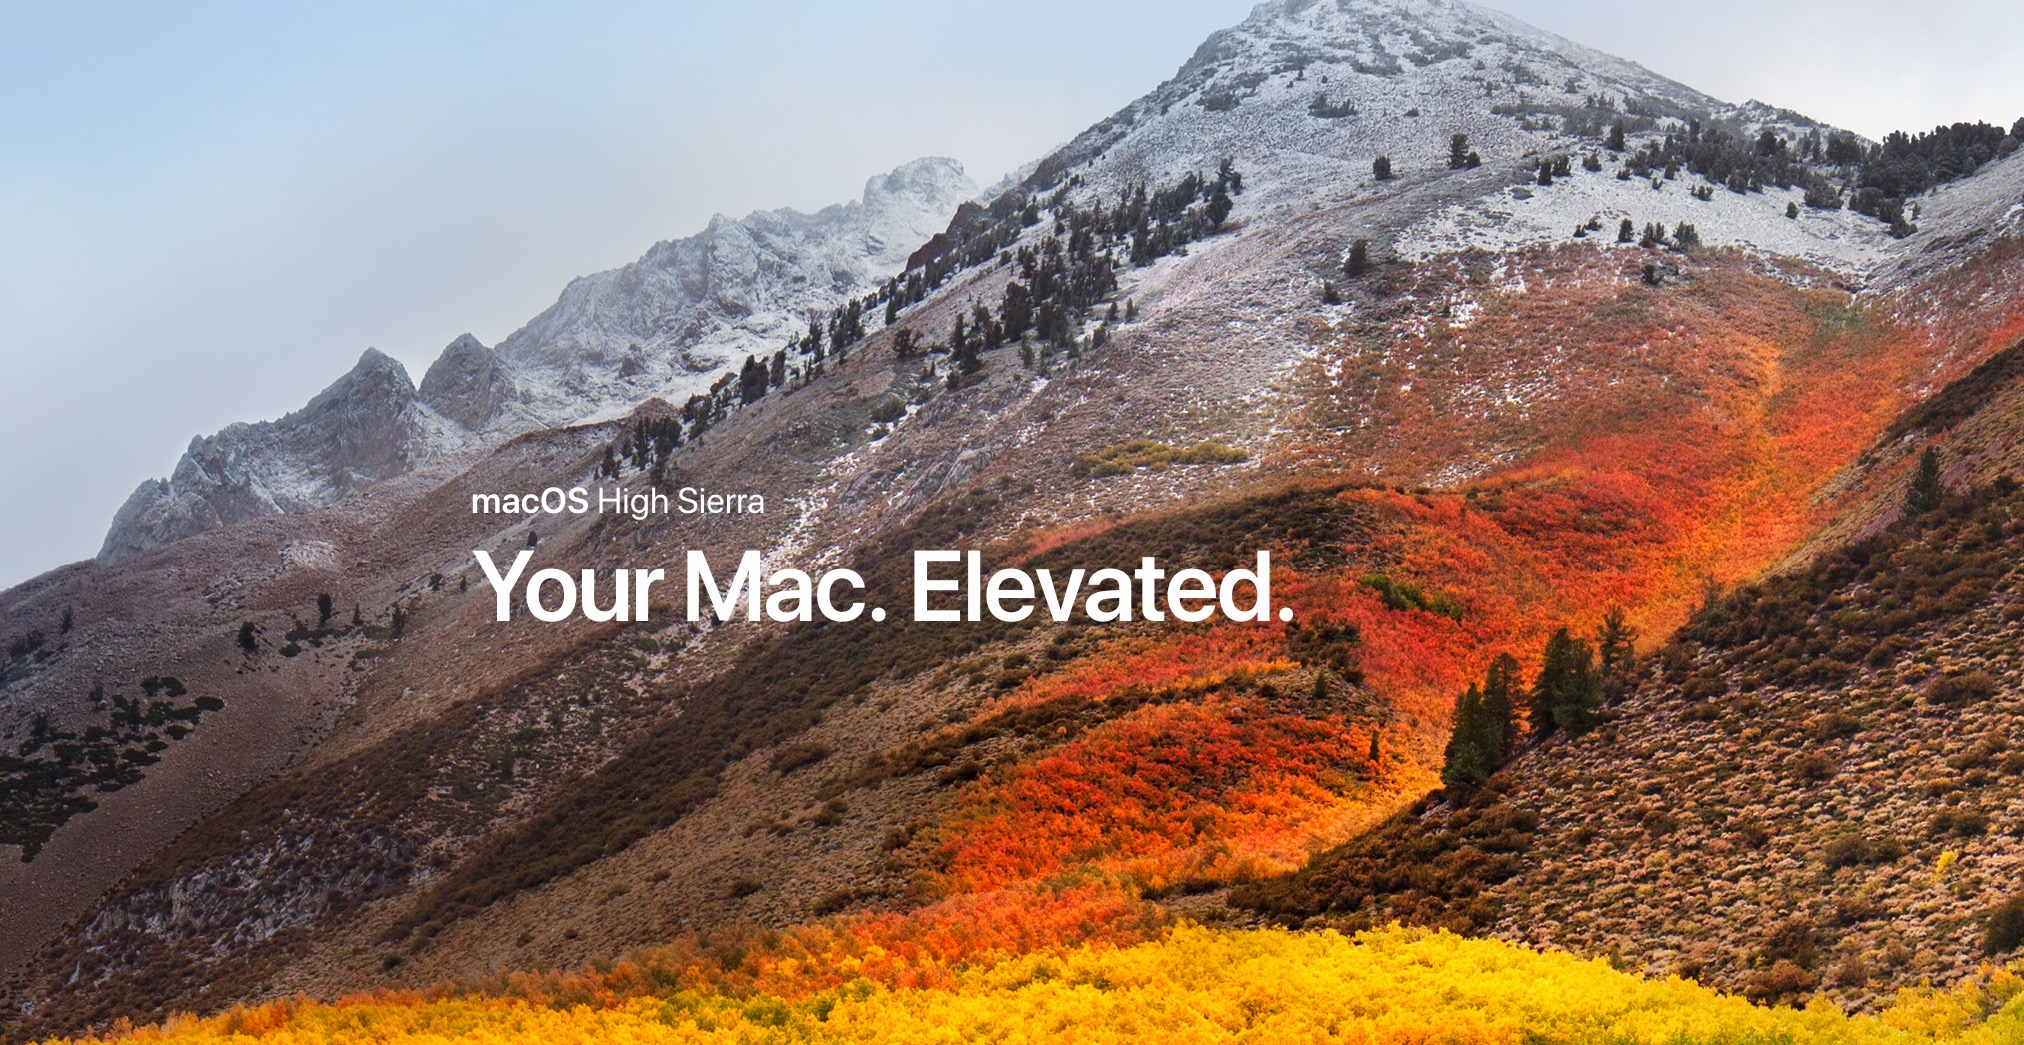 MacOS 10.13 High Sierra
